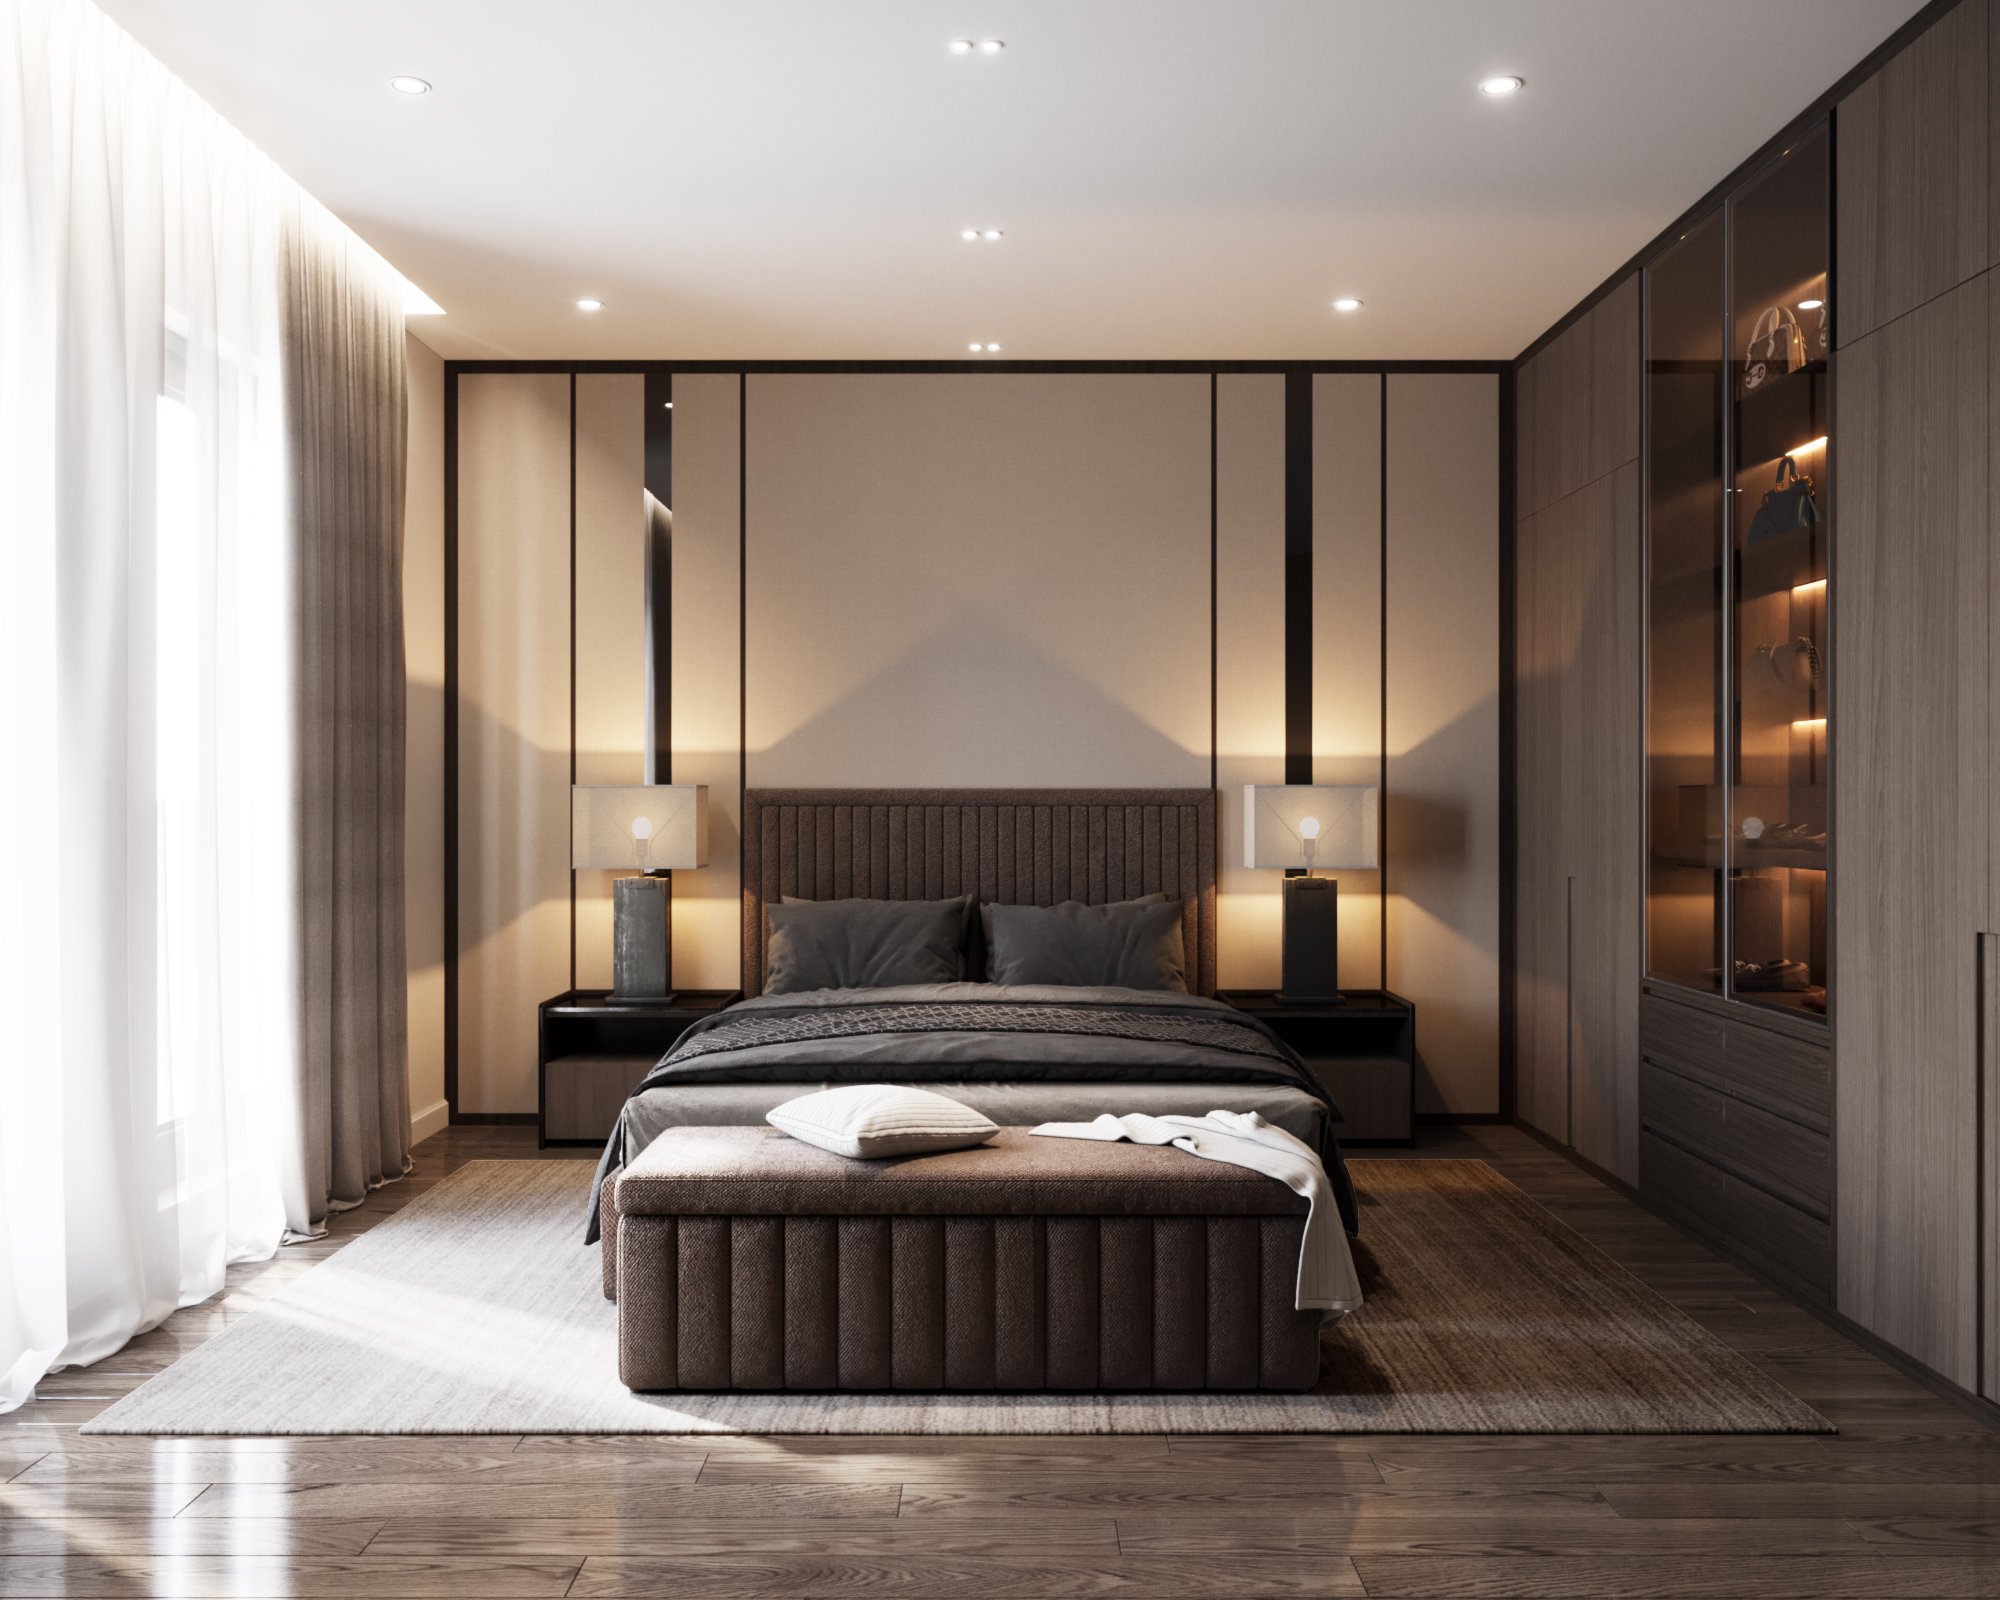 Phòng ngủ, phong cách hiện đại Modern, thiết kế concept nội thất, nhà phố Verosa Park Khang Điền